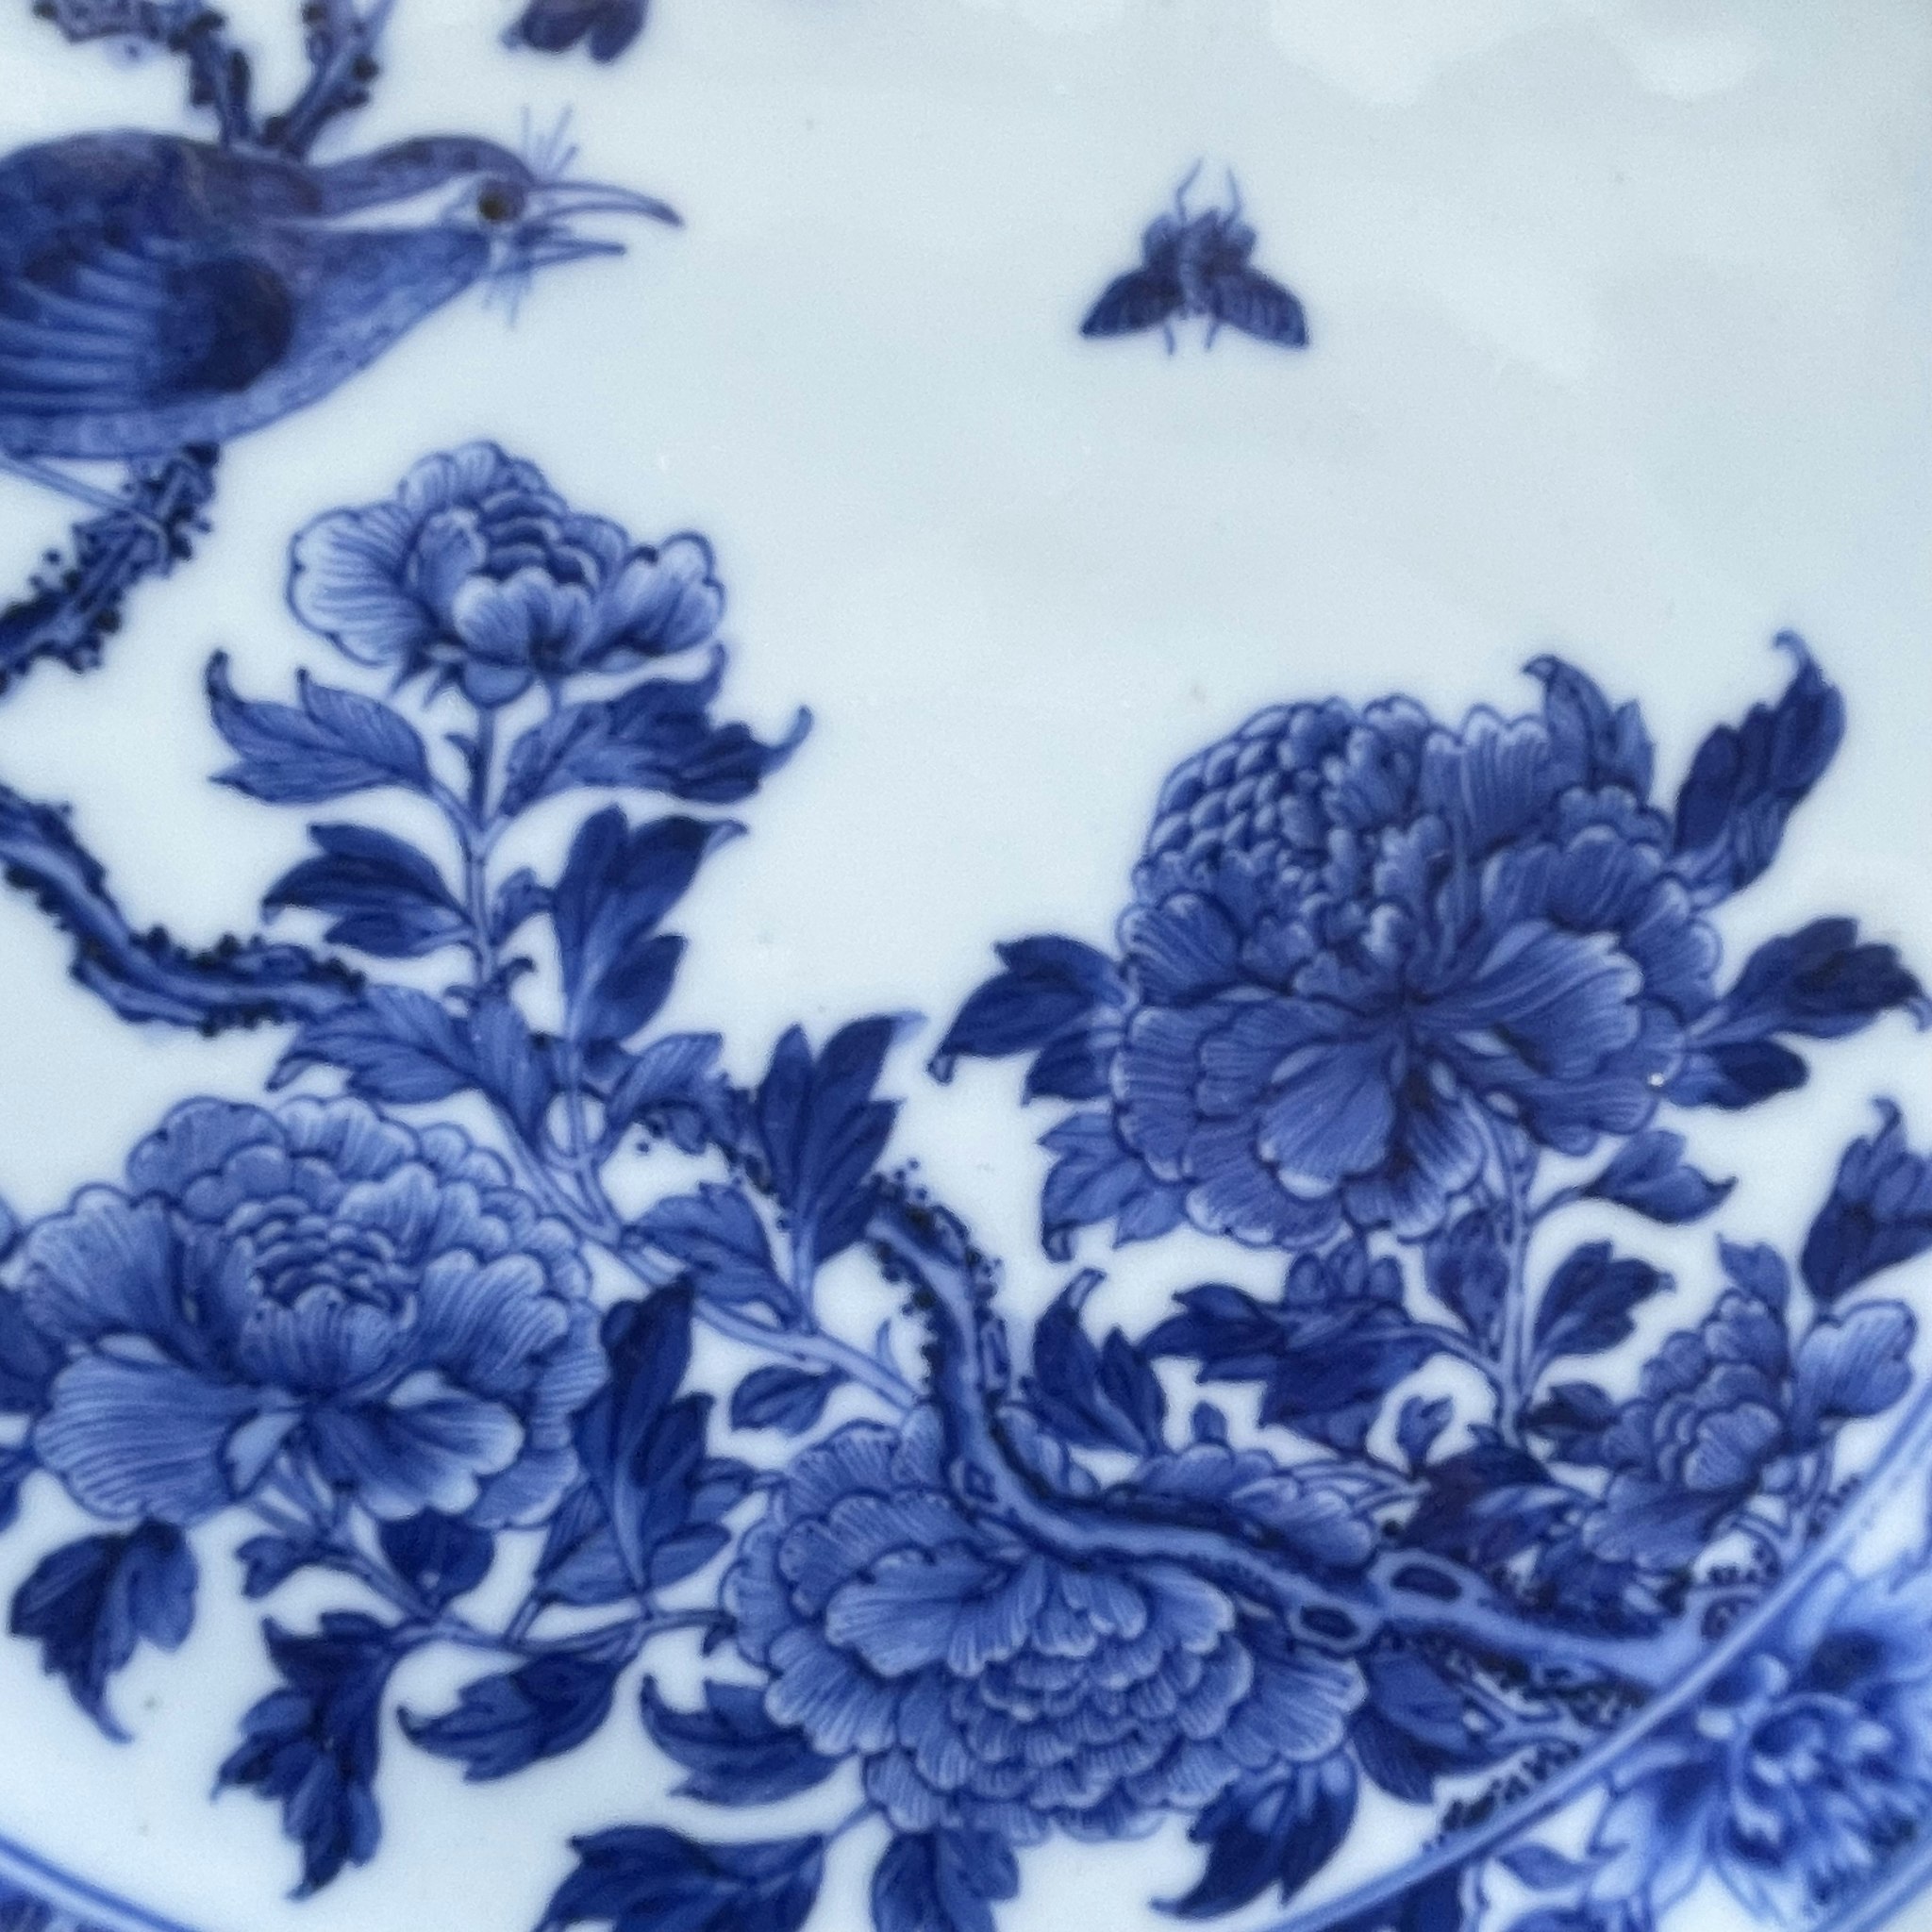 Antique Kangxi / Yongzheng Period Chinese Porcelain plate Qing Dynasty #1070